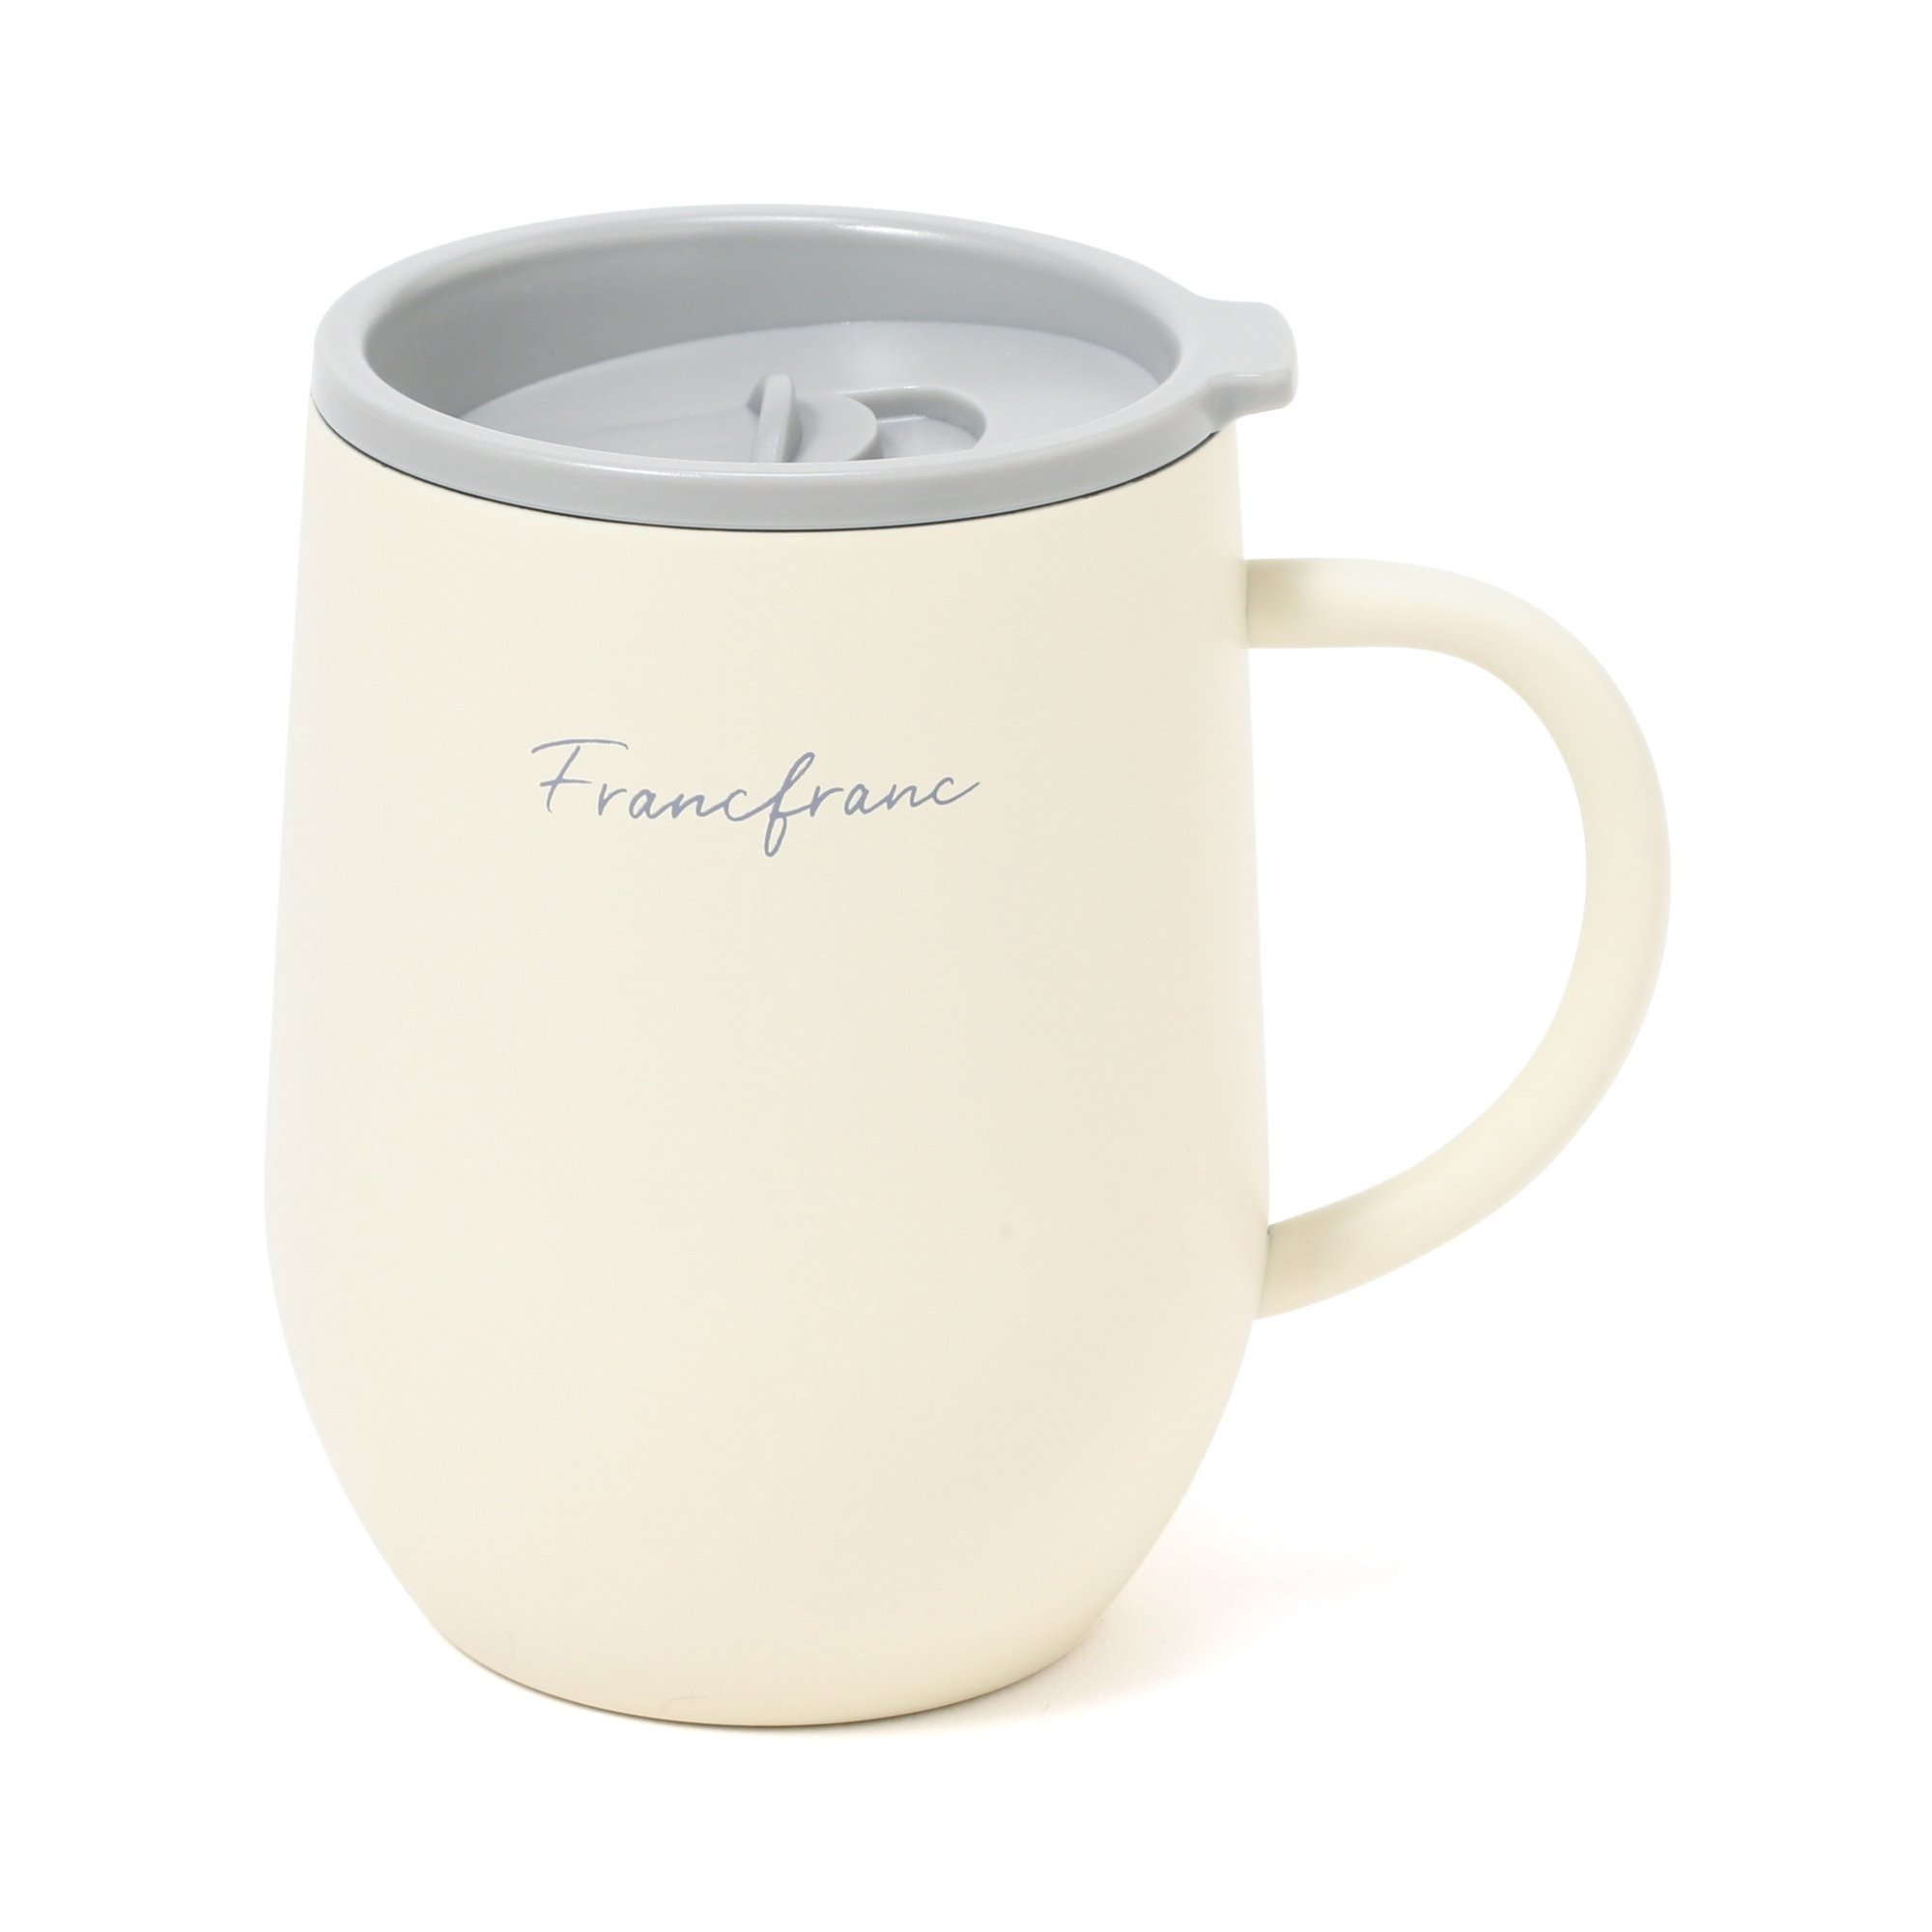 Francfranc フタ付き ステンレスサーモマグ フランフラン 食器 調理器具 キッチン用品 グラス マグカップ タンブラー ホワイト